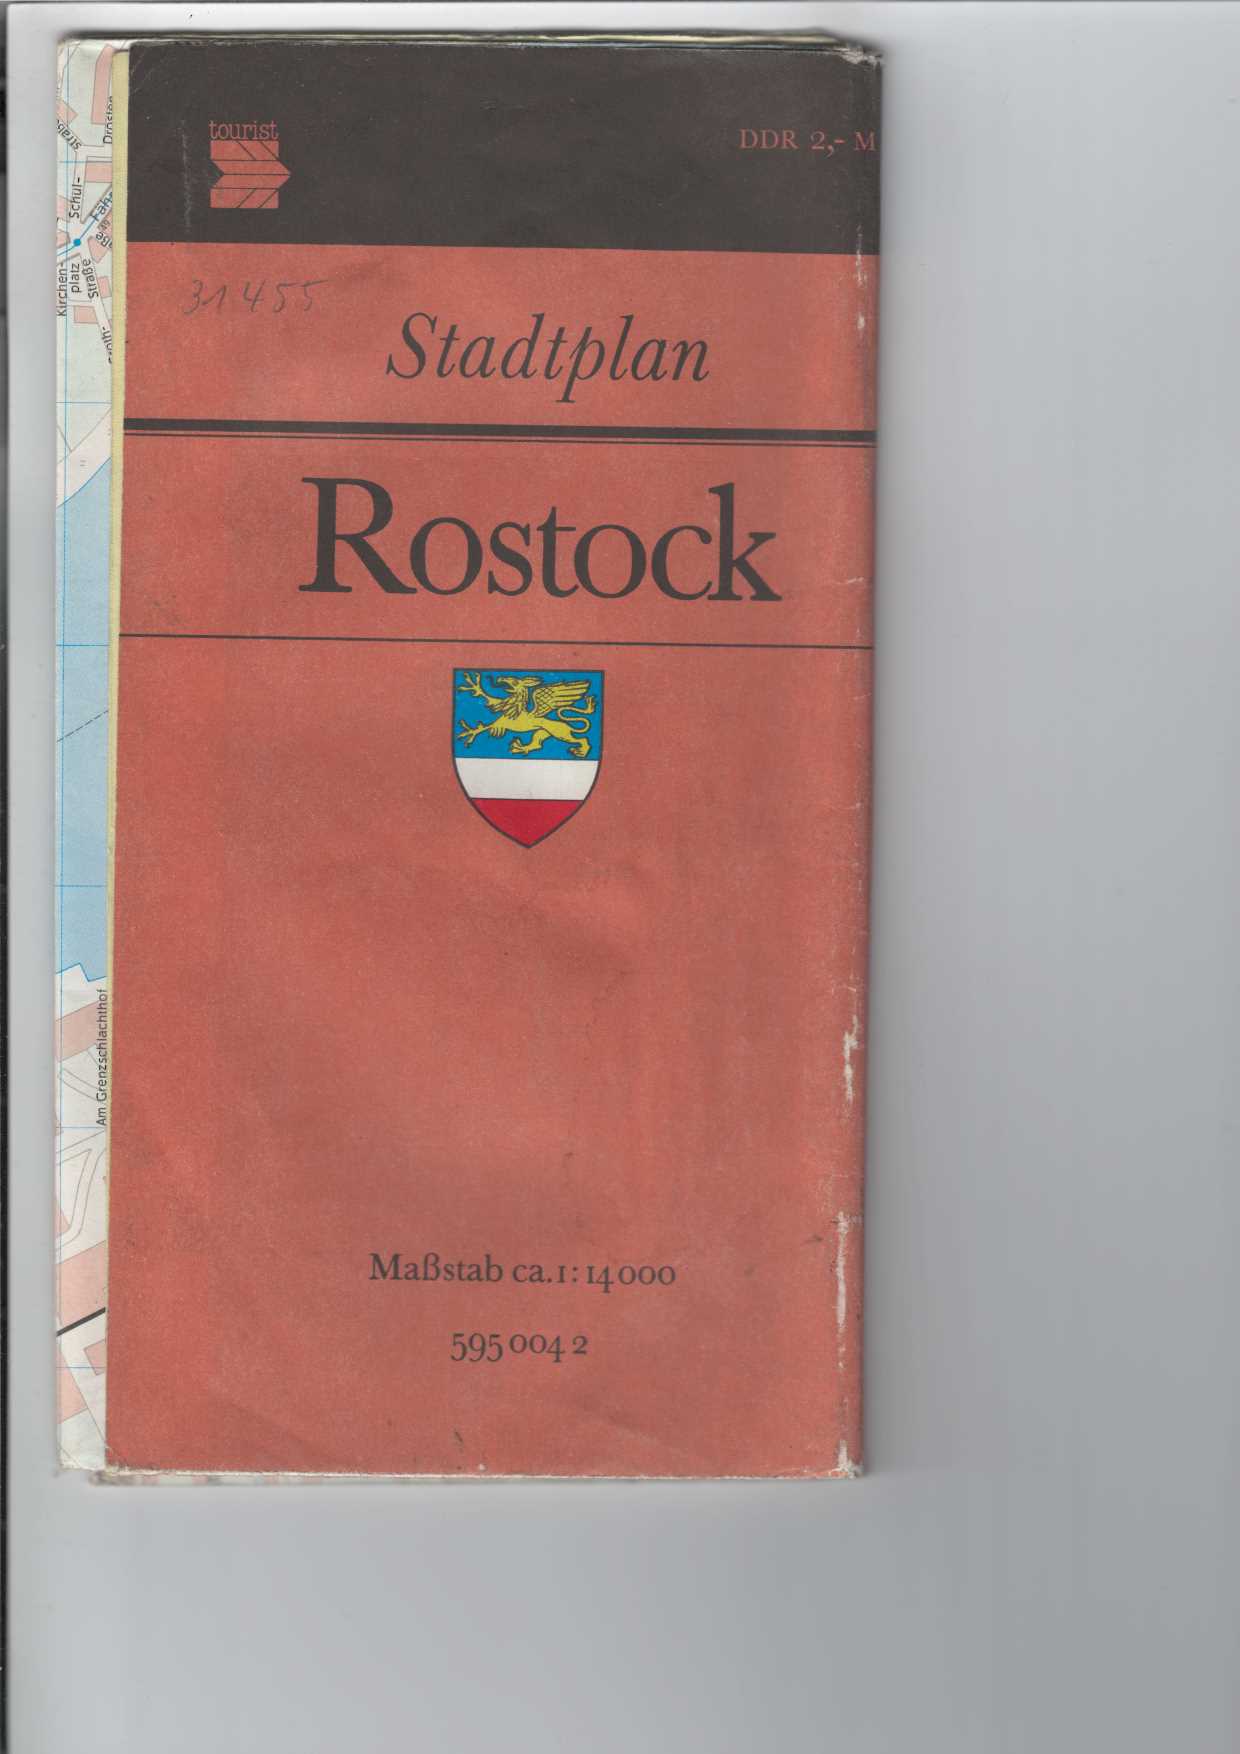 Stadtplan Rostock.